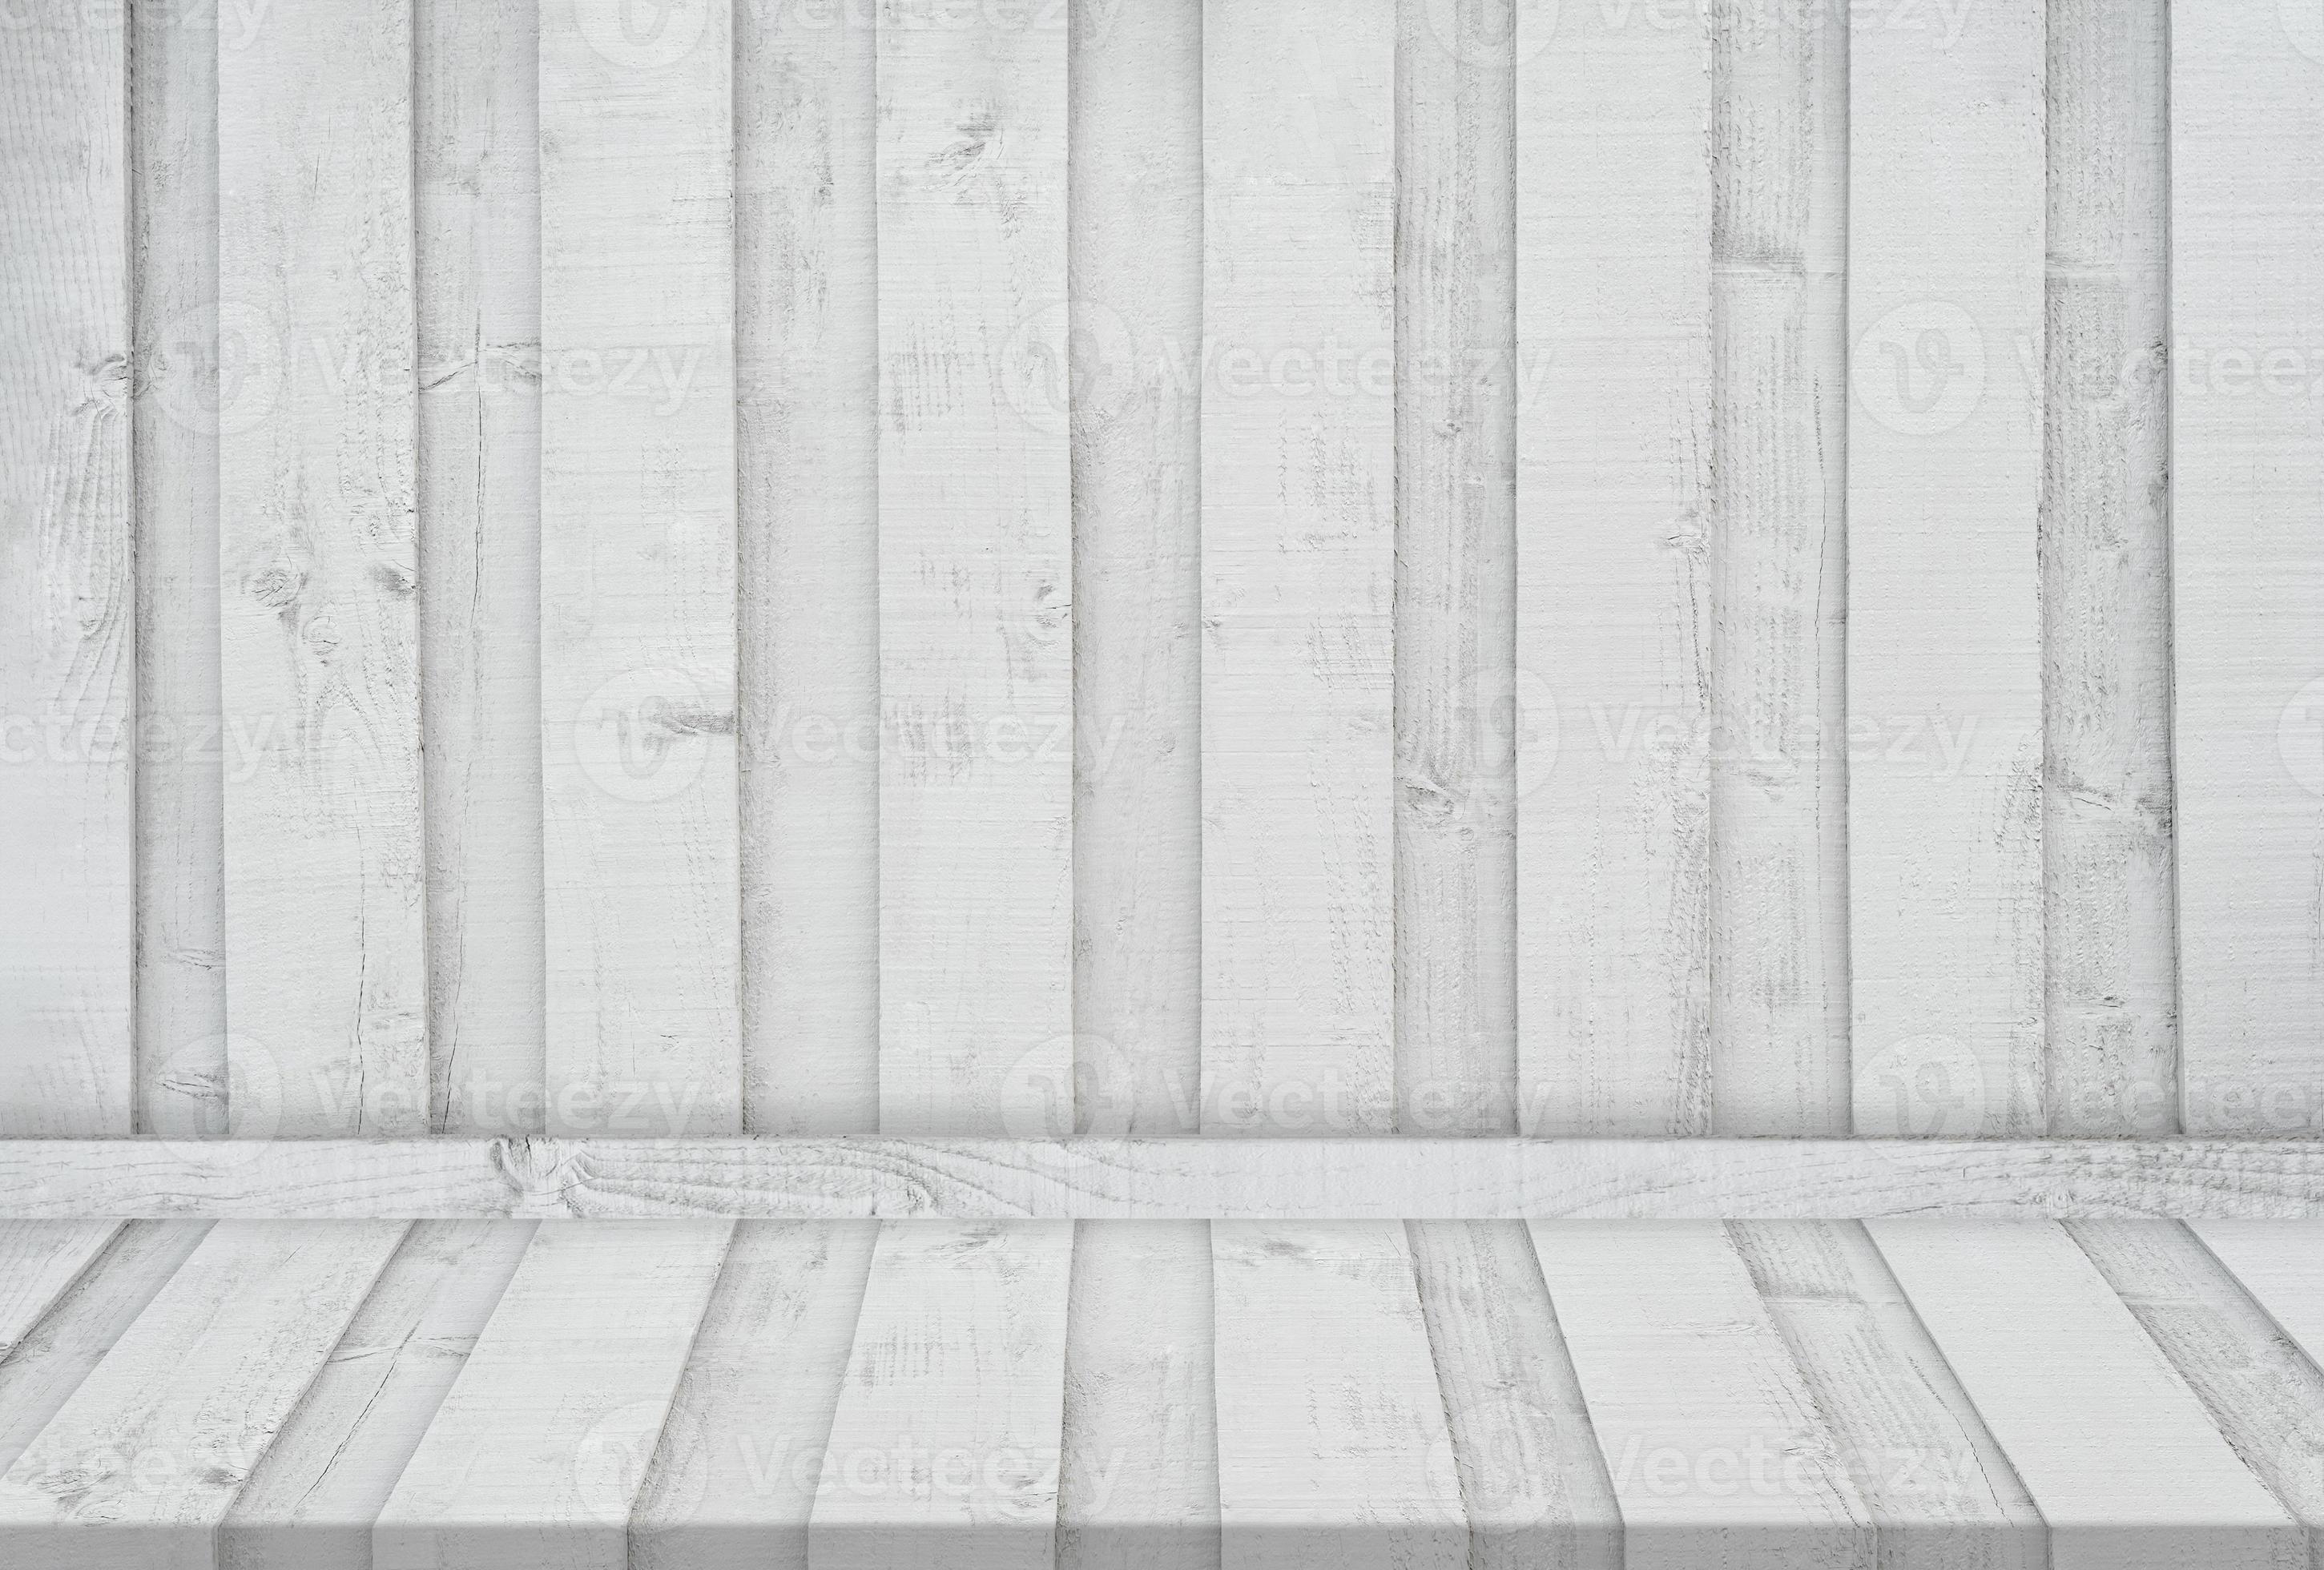 Tấm ván gỗ trắng sẽ là lựa chọn tuyệt vời cho việc trang trí nhà cửa. Tông màu trắng mang lại sự thanh lịch và tinh tế cho không gian của bạn. Hãy xem hình ảnh và cảm nhận sự đơn giản nhưng đẹp mắt của tấm ván gỗ trắng này.